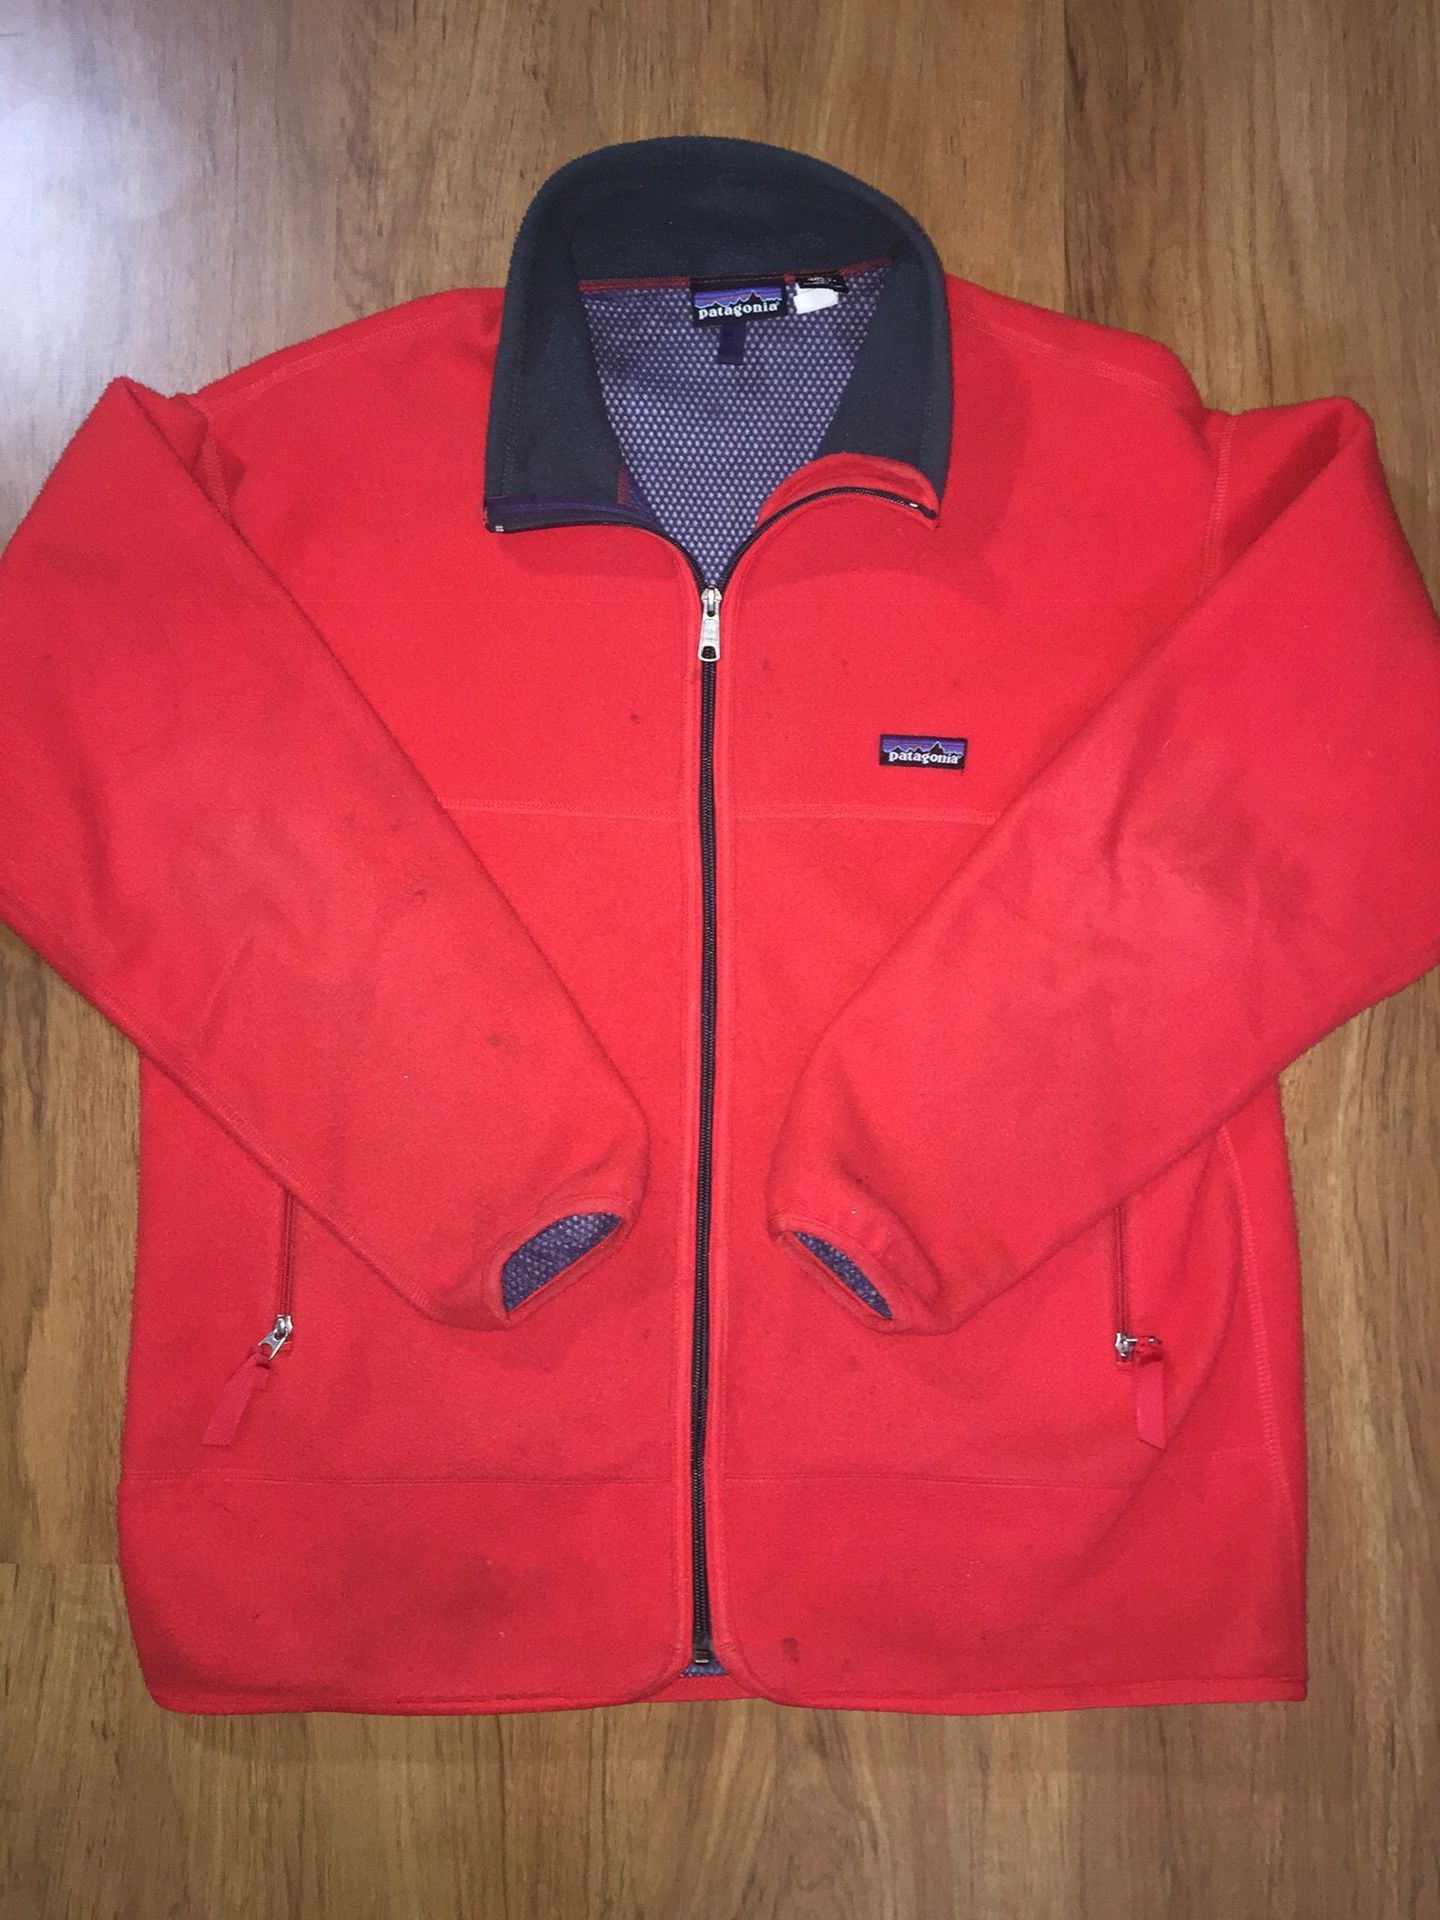 Patagonia Full Zip Jacket